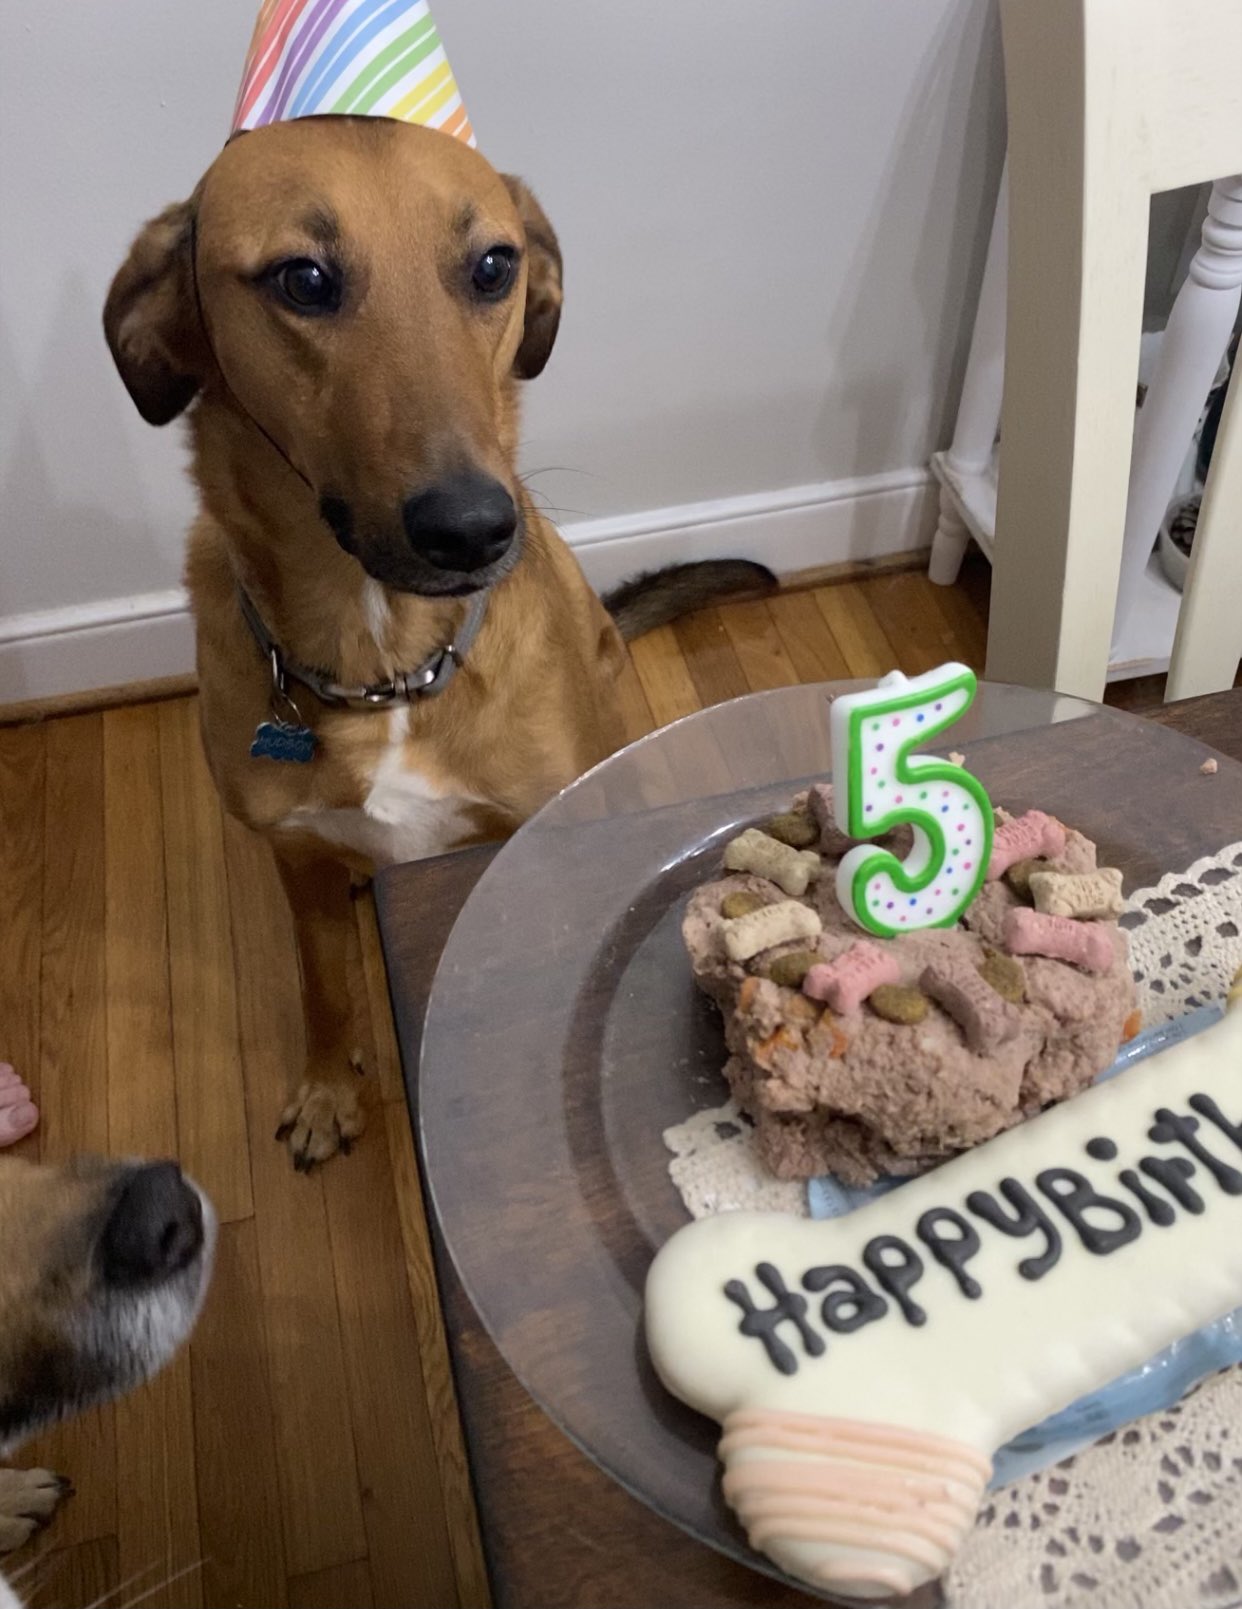 Hudson on X: "It's my birthday! Happy 5th birthday to me. 🍰🎂🦴💩  #DogsofTwittter https://t.co/FmAZTTpFED" / X